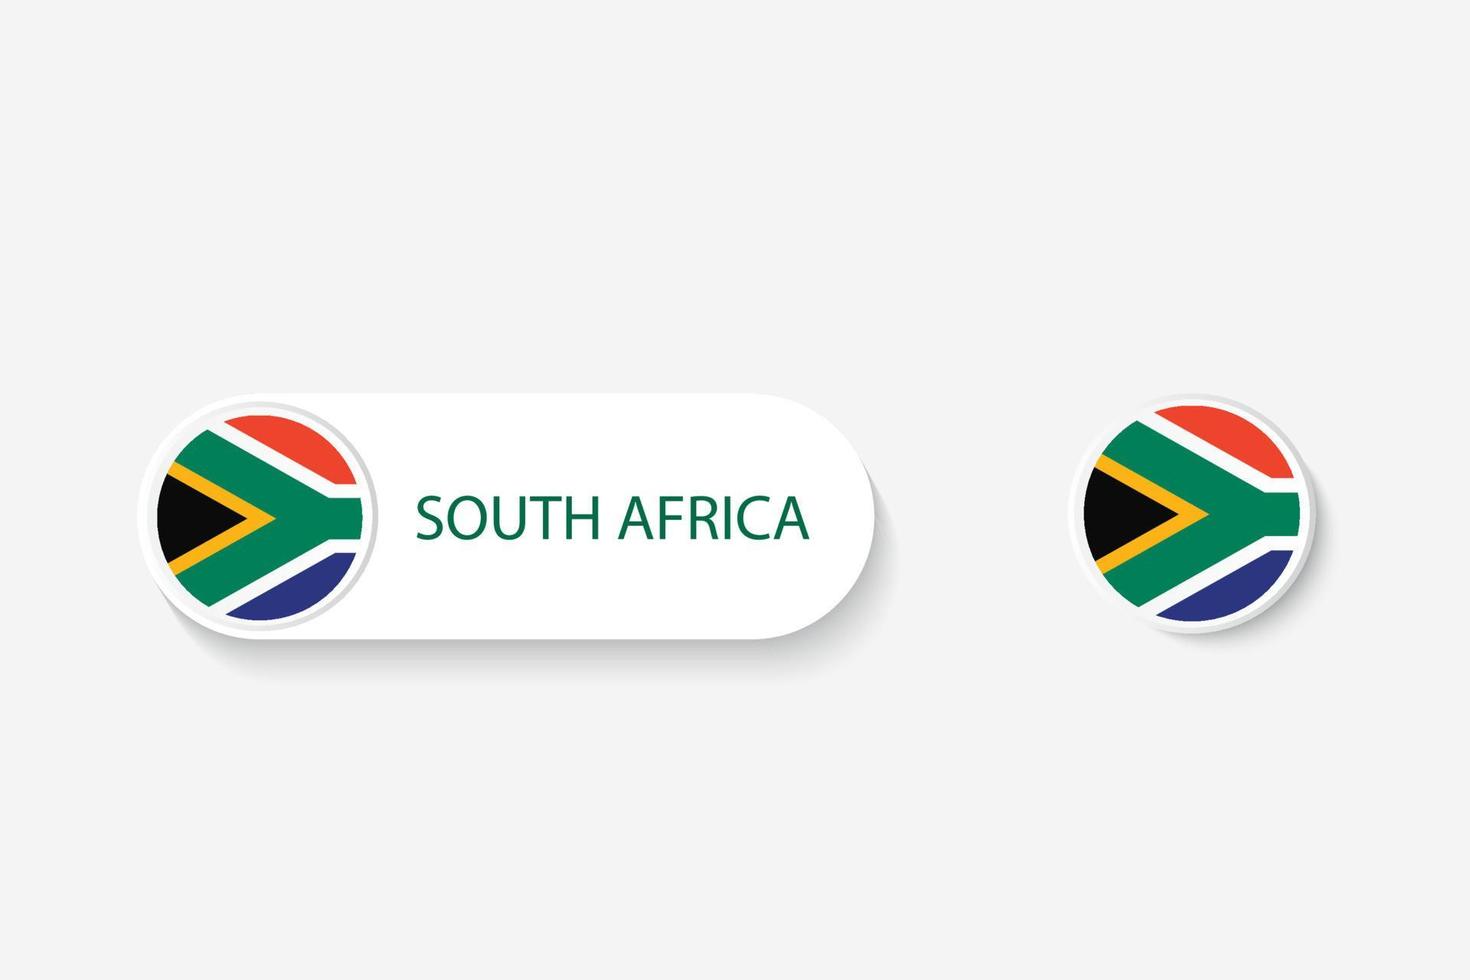 bandiera del pulsante del sud africa nell'illustrazione di forma ovale con la parola del sud africa. e pulsante bandiera sudafrica. vettore